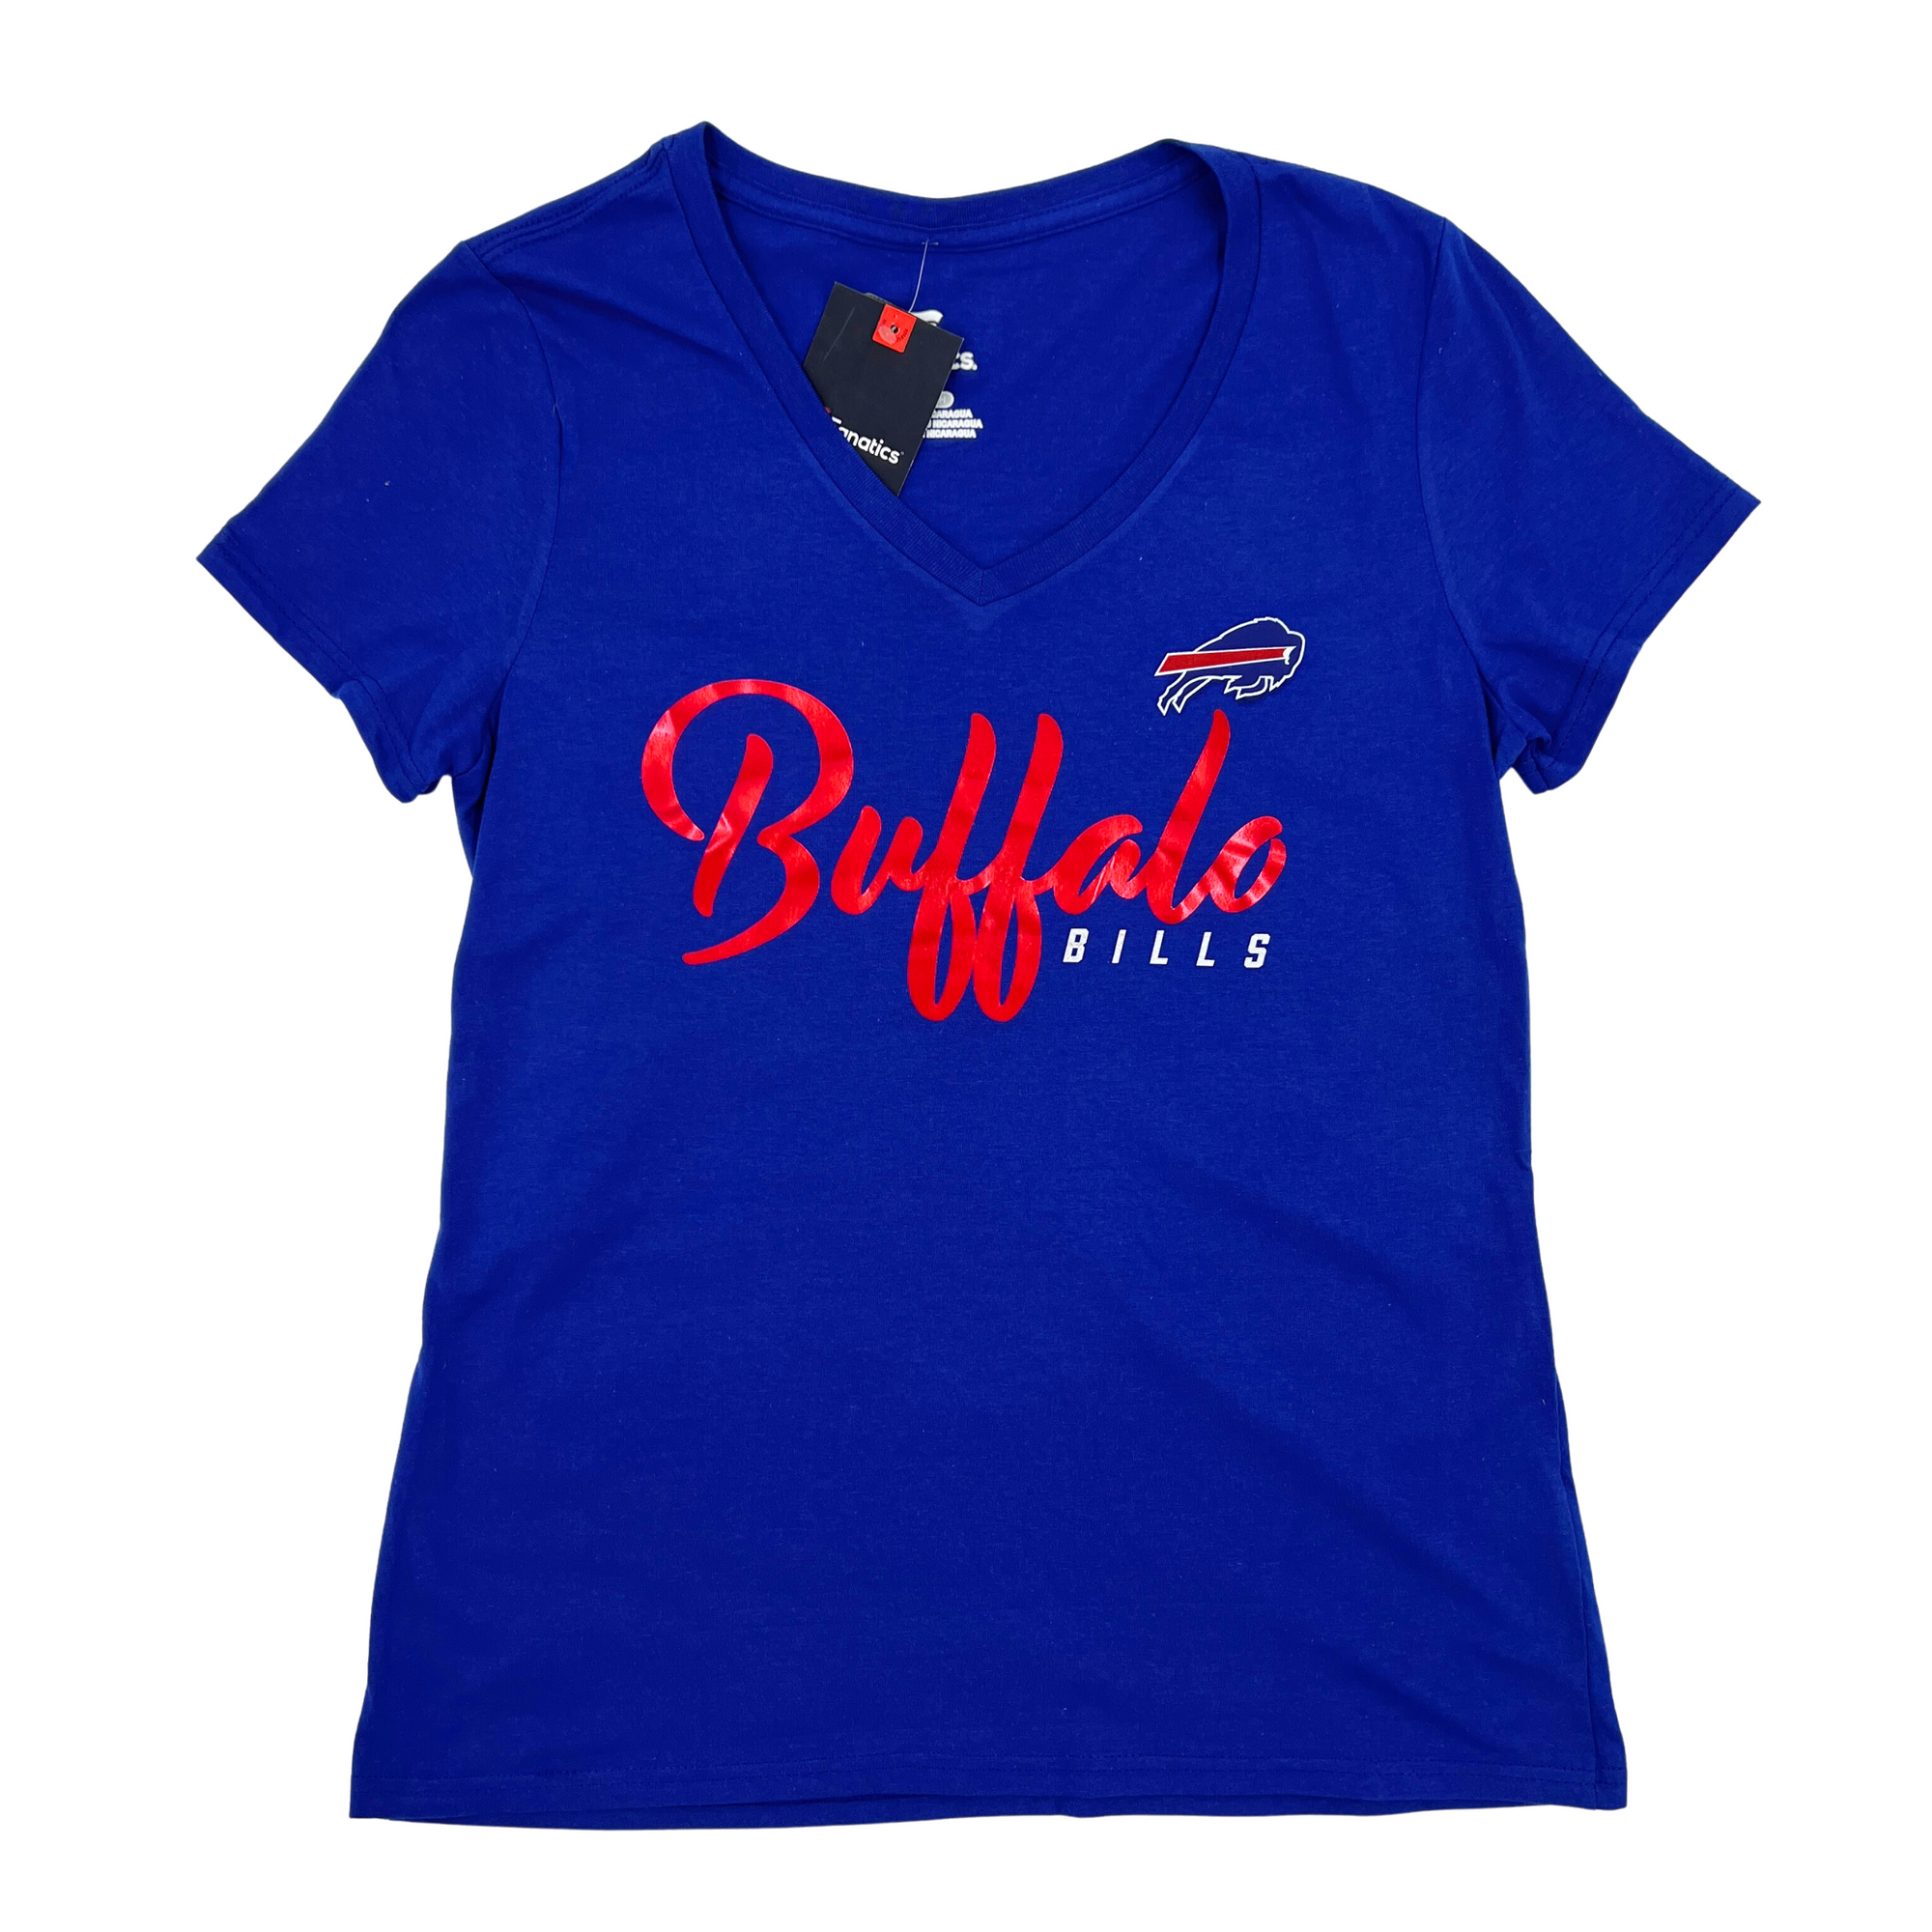 Buffalo Bills Women's Apparel, Ladies Bills Clothing, Buffalo Bills